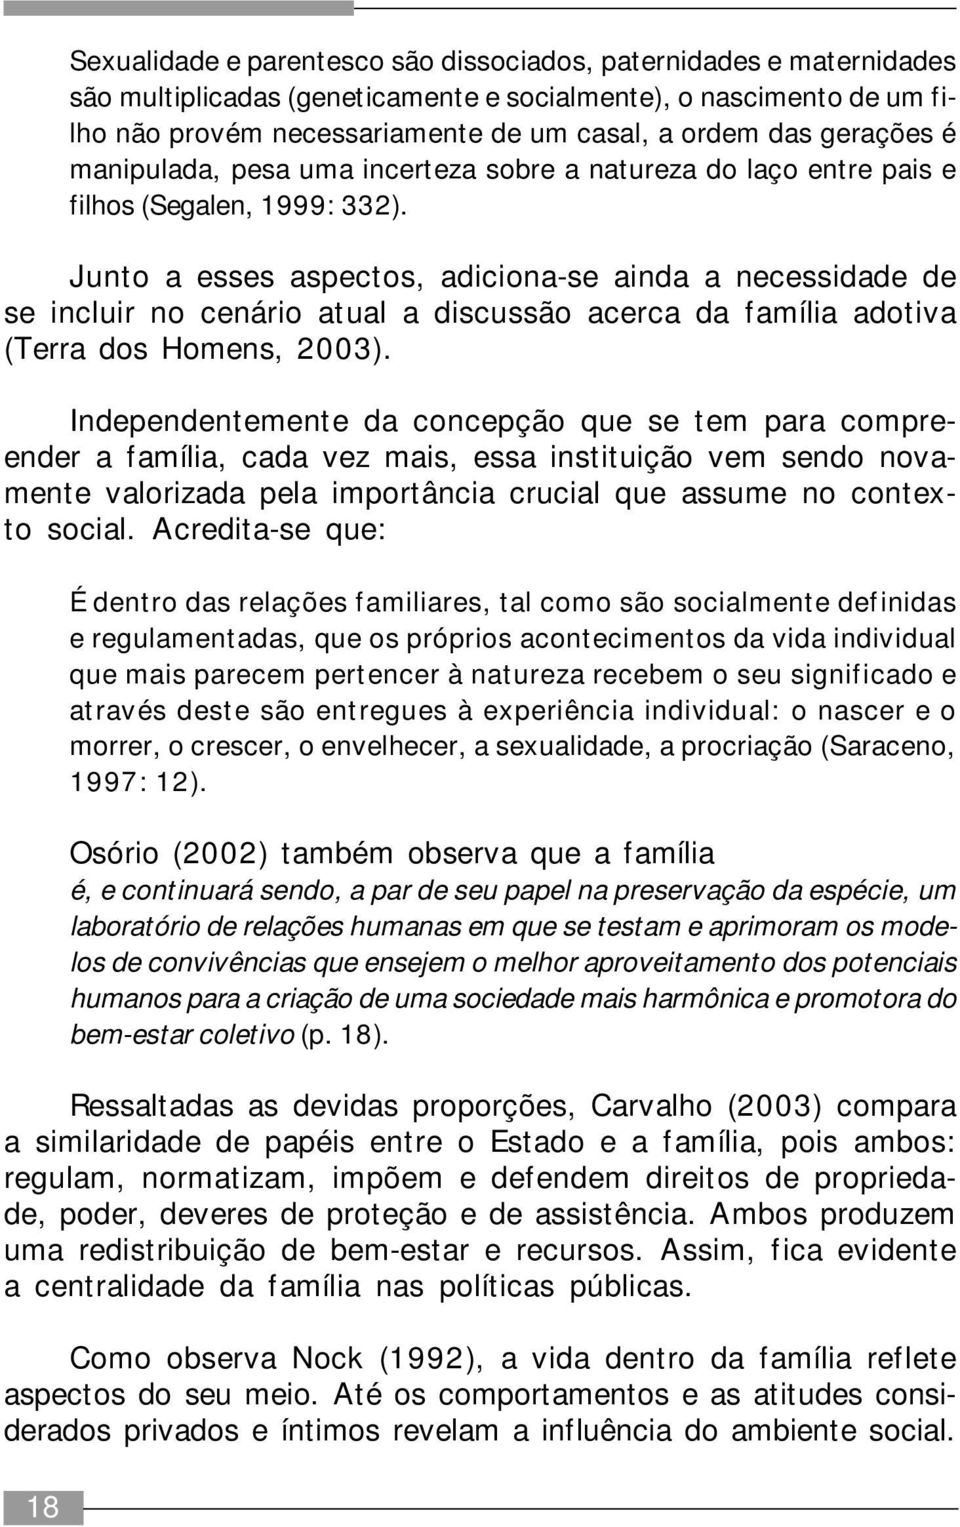 Junto a esses aspectos, adiciona-se ainda a necessidade de se incluir no cenário atual a discussão acerca da família adotiva (Terra dos Homens, 2003).